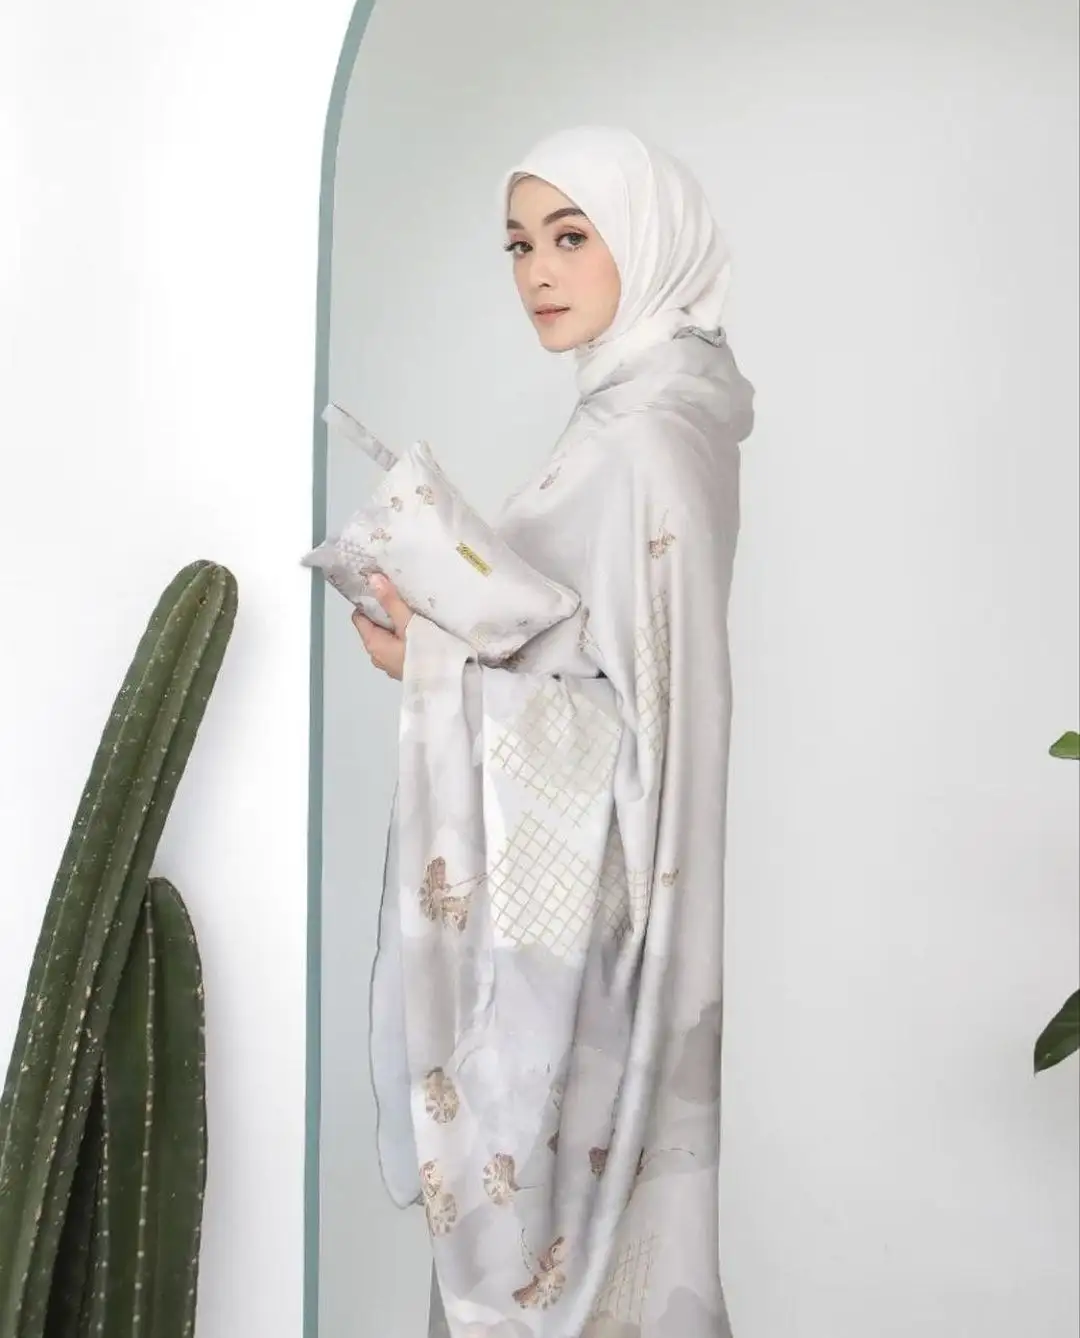 Printed malaysia mukena matte satin silk prayer set sajadah metaltag bedding sofe telekung muslim ramadan prayer wear iftar lady